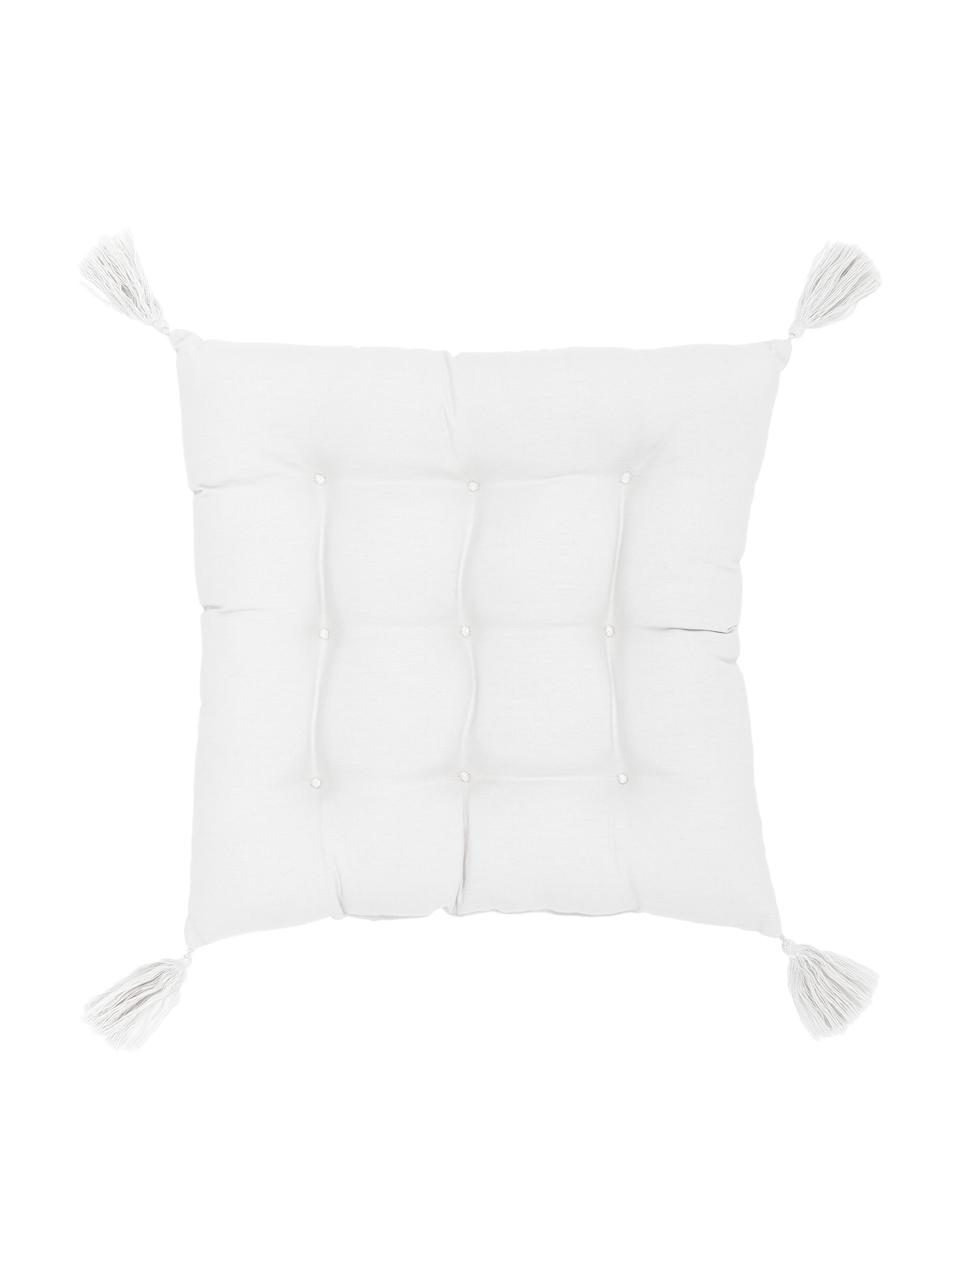 Baumwoll-Sitzkissen Ava in Weiß mit Quasten, Bezug: 100% Baumwolle, Weiß, B 40 x L 40 cm